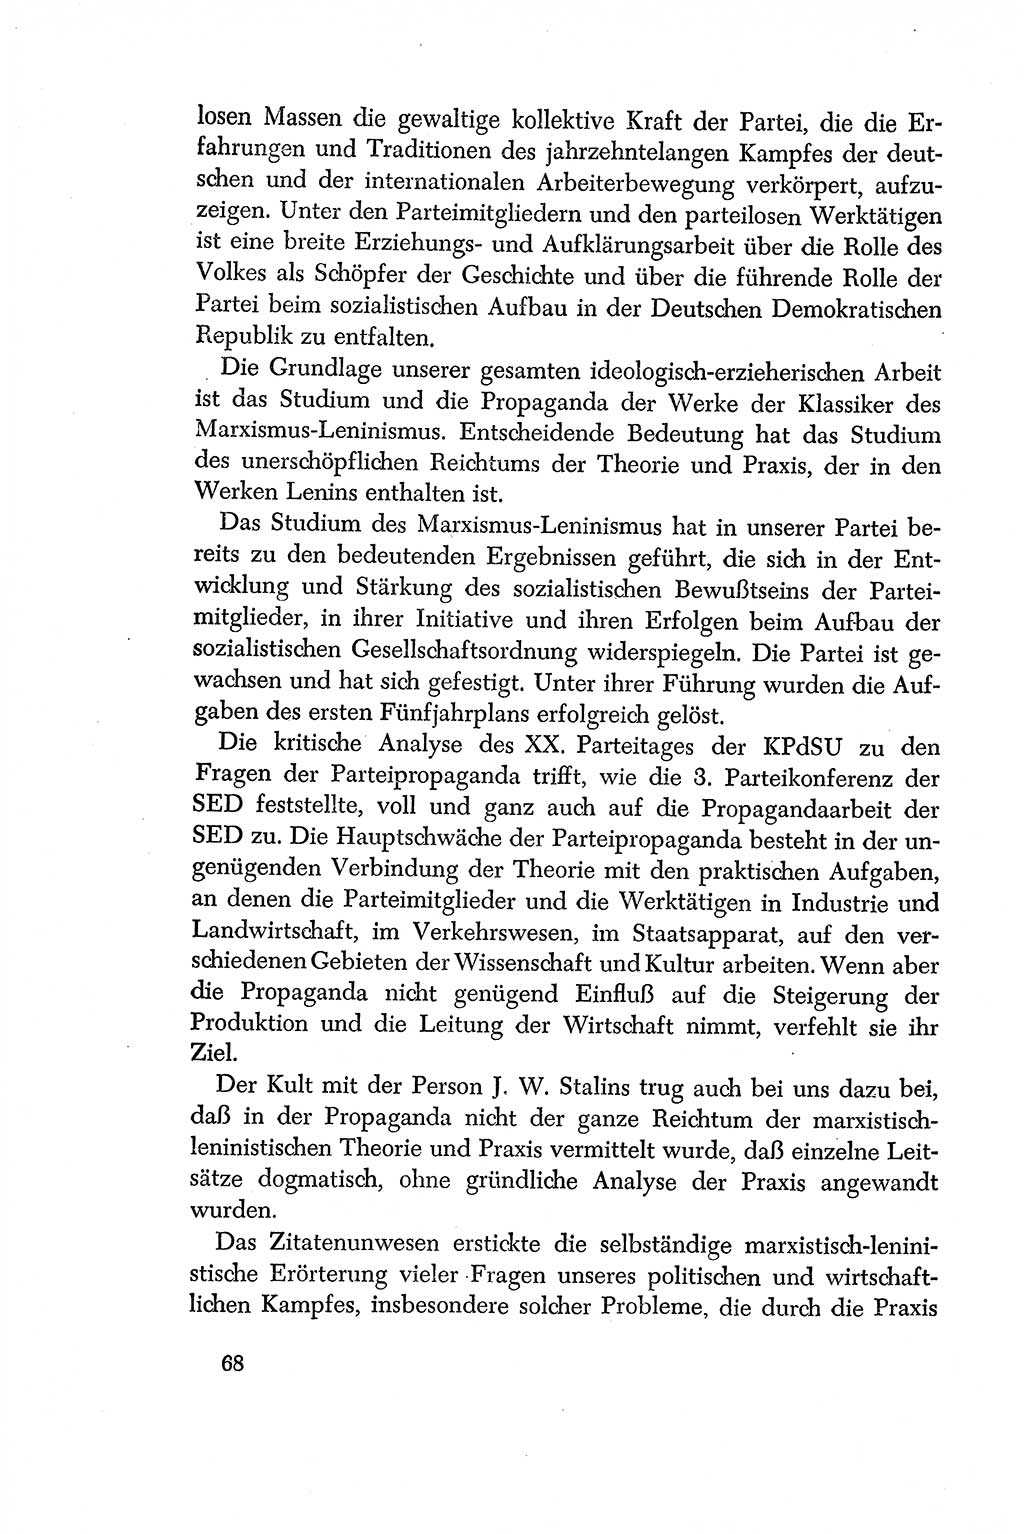 Dokumente der Sozialistischen Einheitspartei Deutschlands (SED) [Deutsche Demokratische Republik (DDR)] 1956-1957, Seite 68 (Dok. SED DDR 1956-1957, S. 68)